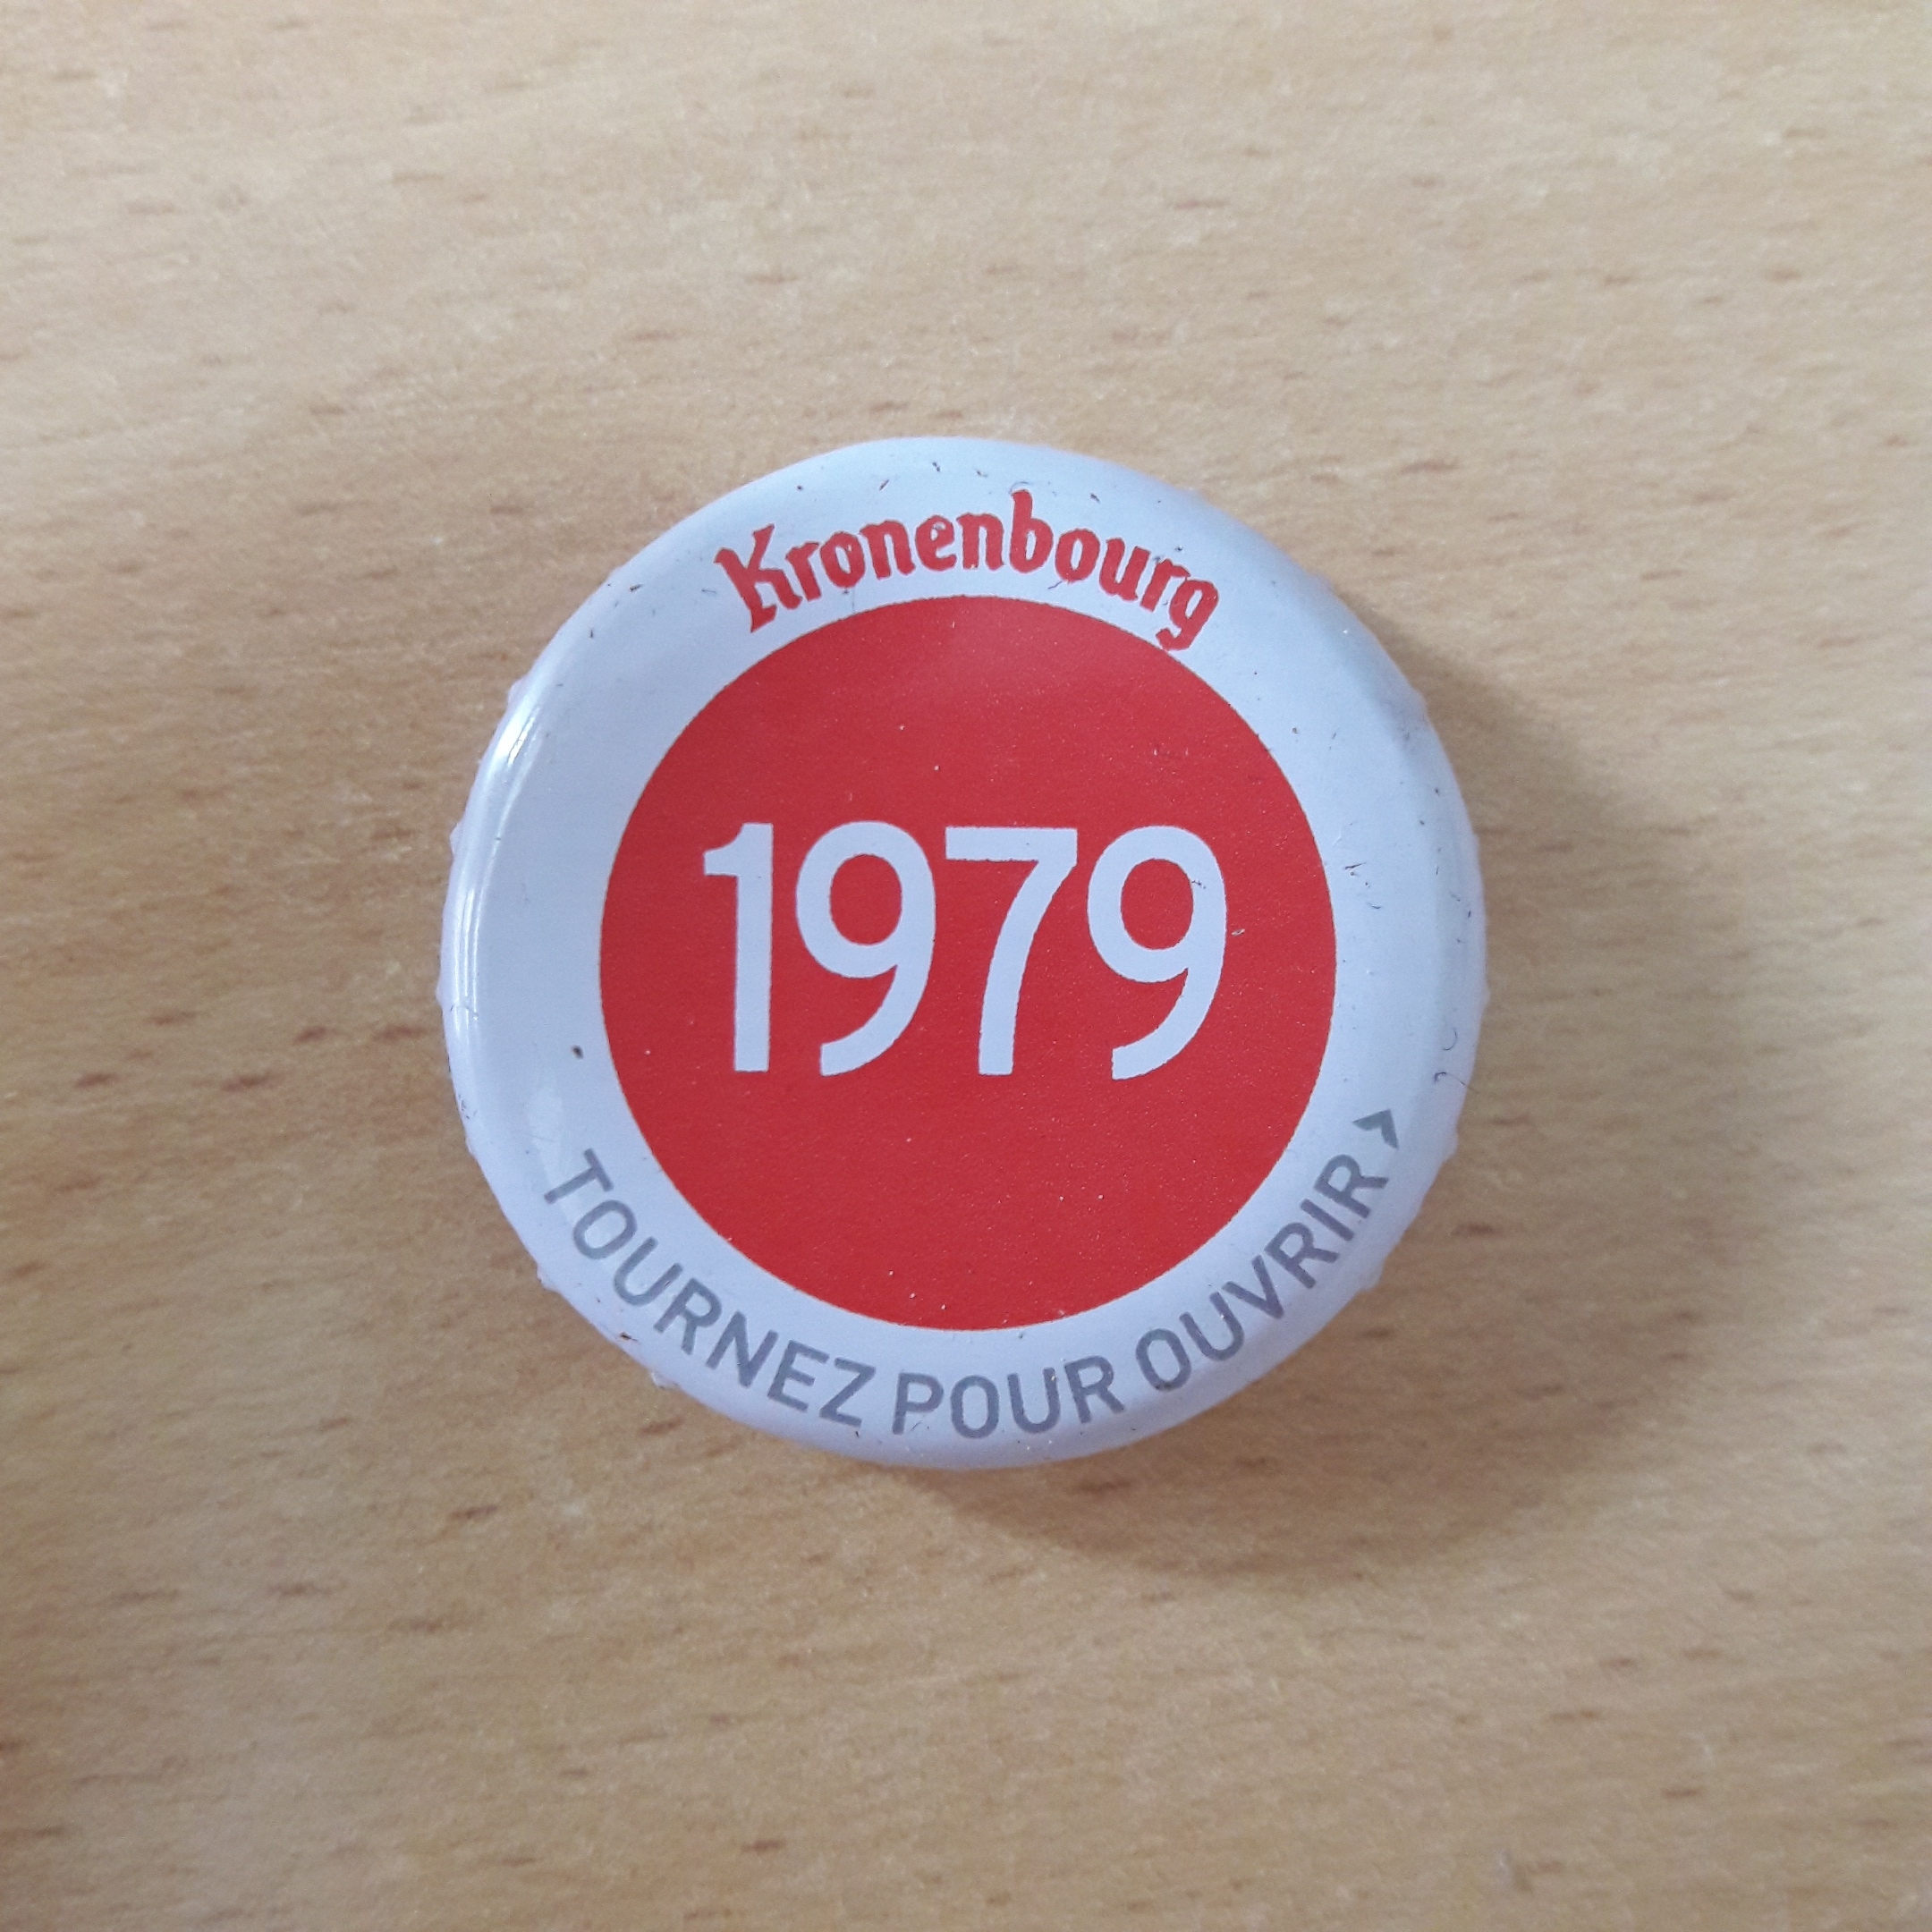 Kronenbourg 1979